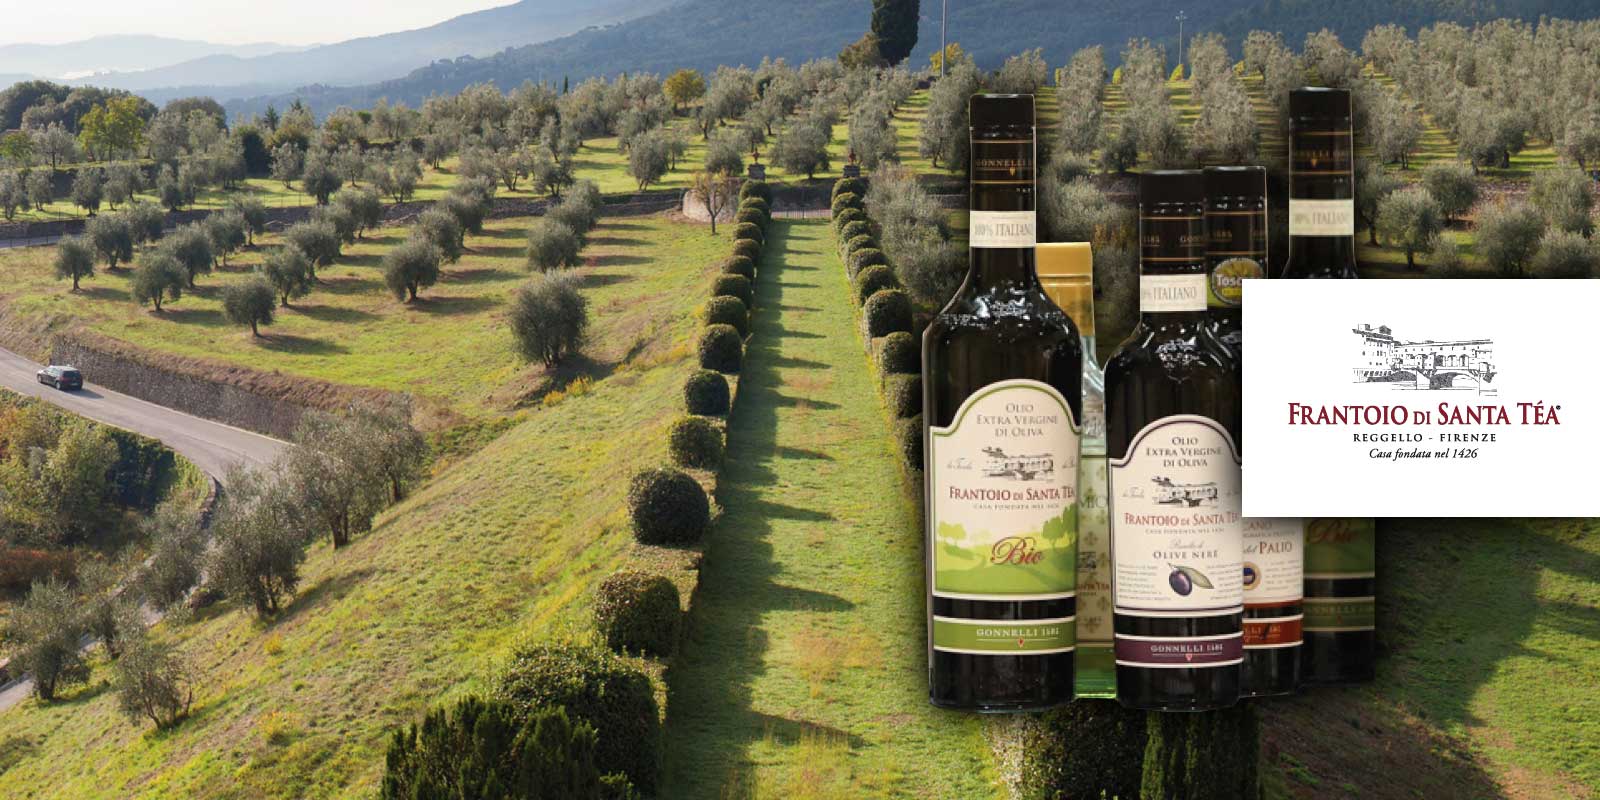 Gonnelli Frantoio di Santa Tea 1585 Olivenöl aus der Toskana Gonnelli 1585 ist eine Marke, die die Beziehung zwischen der Familie Gonnelli und der Welt der traditionellen Ölproduktion darstellt. Im Jahr 1585 kaufte die Familie die Farm von Santa Téa und die dazugehörige Ölmühle, die 1426 erbaut wurde. Heute ist die Firma, Besitzer der Mühle Vertine im Chianti Classico, eine der italienischen Spitzenleistungen in der Welt des nativen Olivenöls. Die Philosophie war immer, ein gesundes, echtes und natürliches Olivenöl anzubieten.
Gonnelli 1585, das mehrere Meilensteine in der Branche erreicht hat und kontinuierlich die Bedeutung von Olivenöl als Lebensmittel mit unzähligen ernährungsphysiologischen und gesundheitsbezogenen Eigenschaften sowie als Träger von Geschmack und Wert in jedem Gericht und in jeder Zubereitung bestätigt hat. Heute bietet Gonnelli 1585 eine breite und vielfältige Produktpalette mit vielen verschiedenen Ölen mit ihren verschiedenen Geschmacksrichtungen und Aromen.